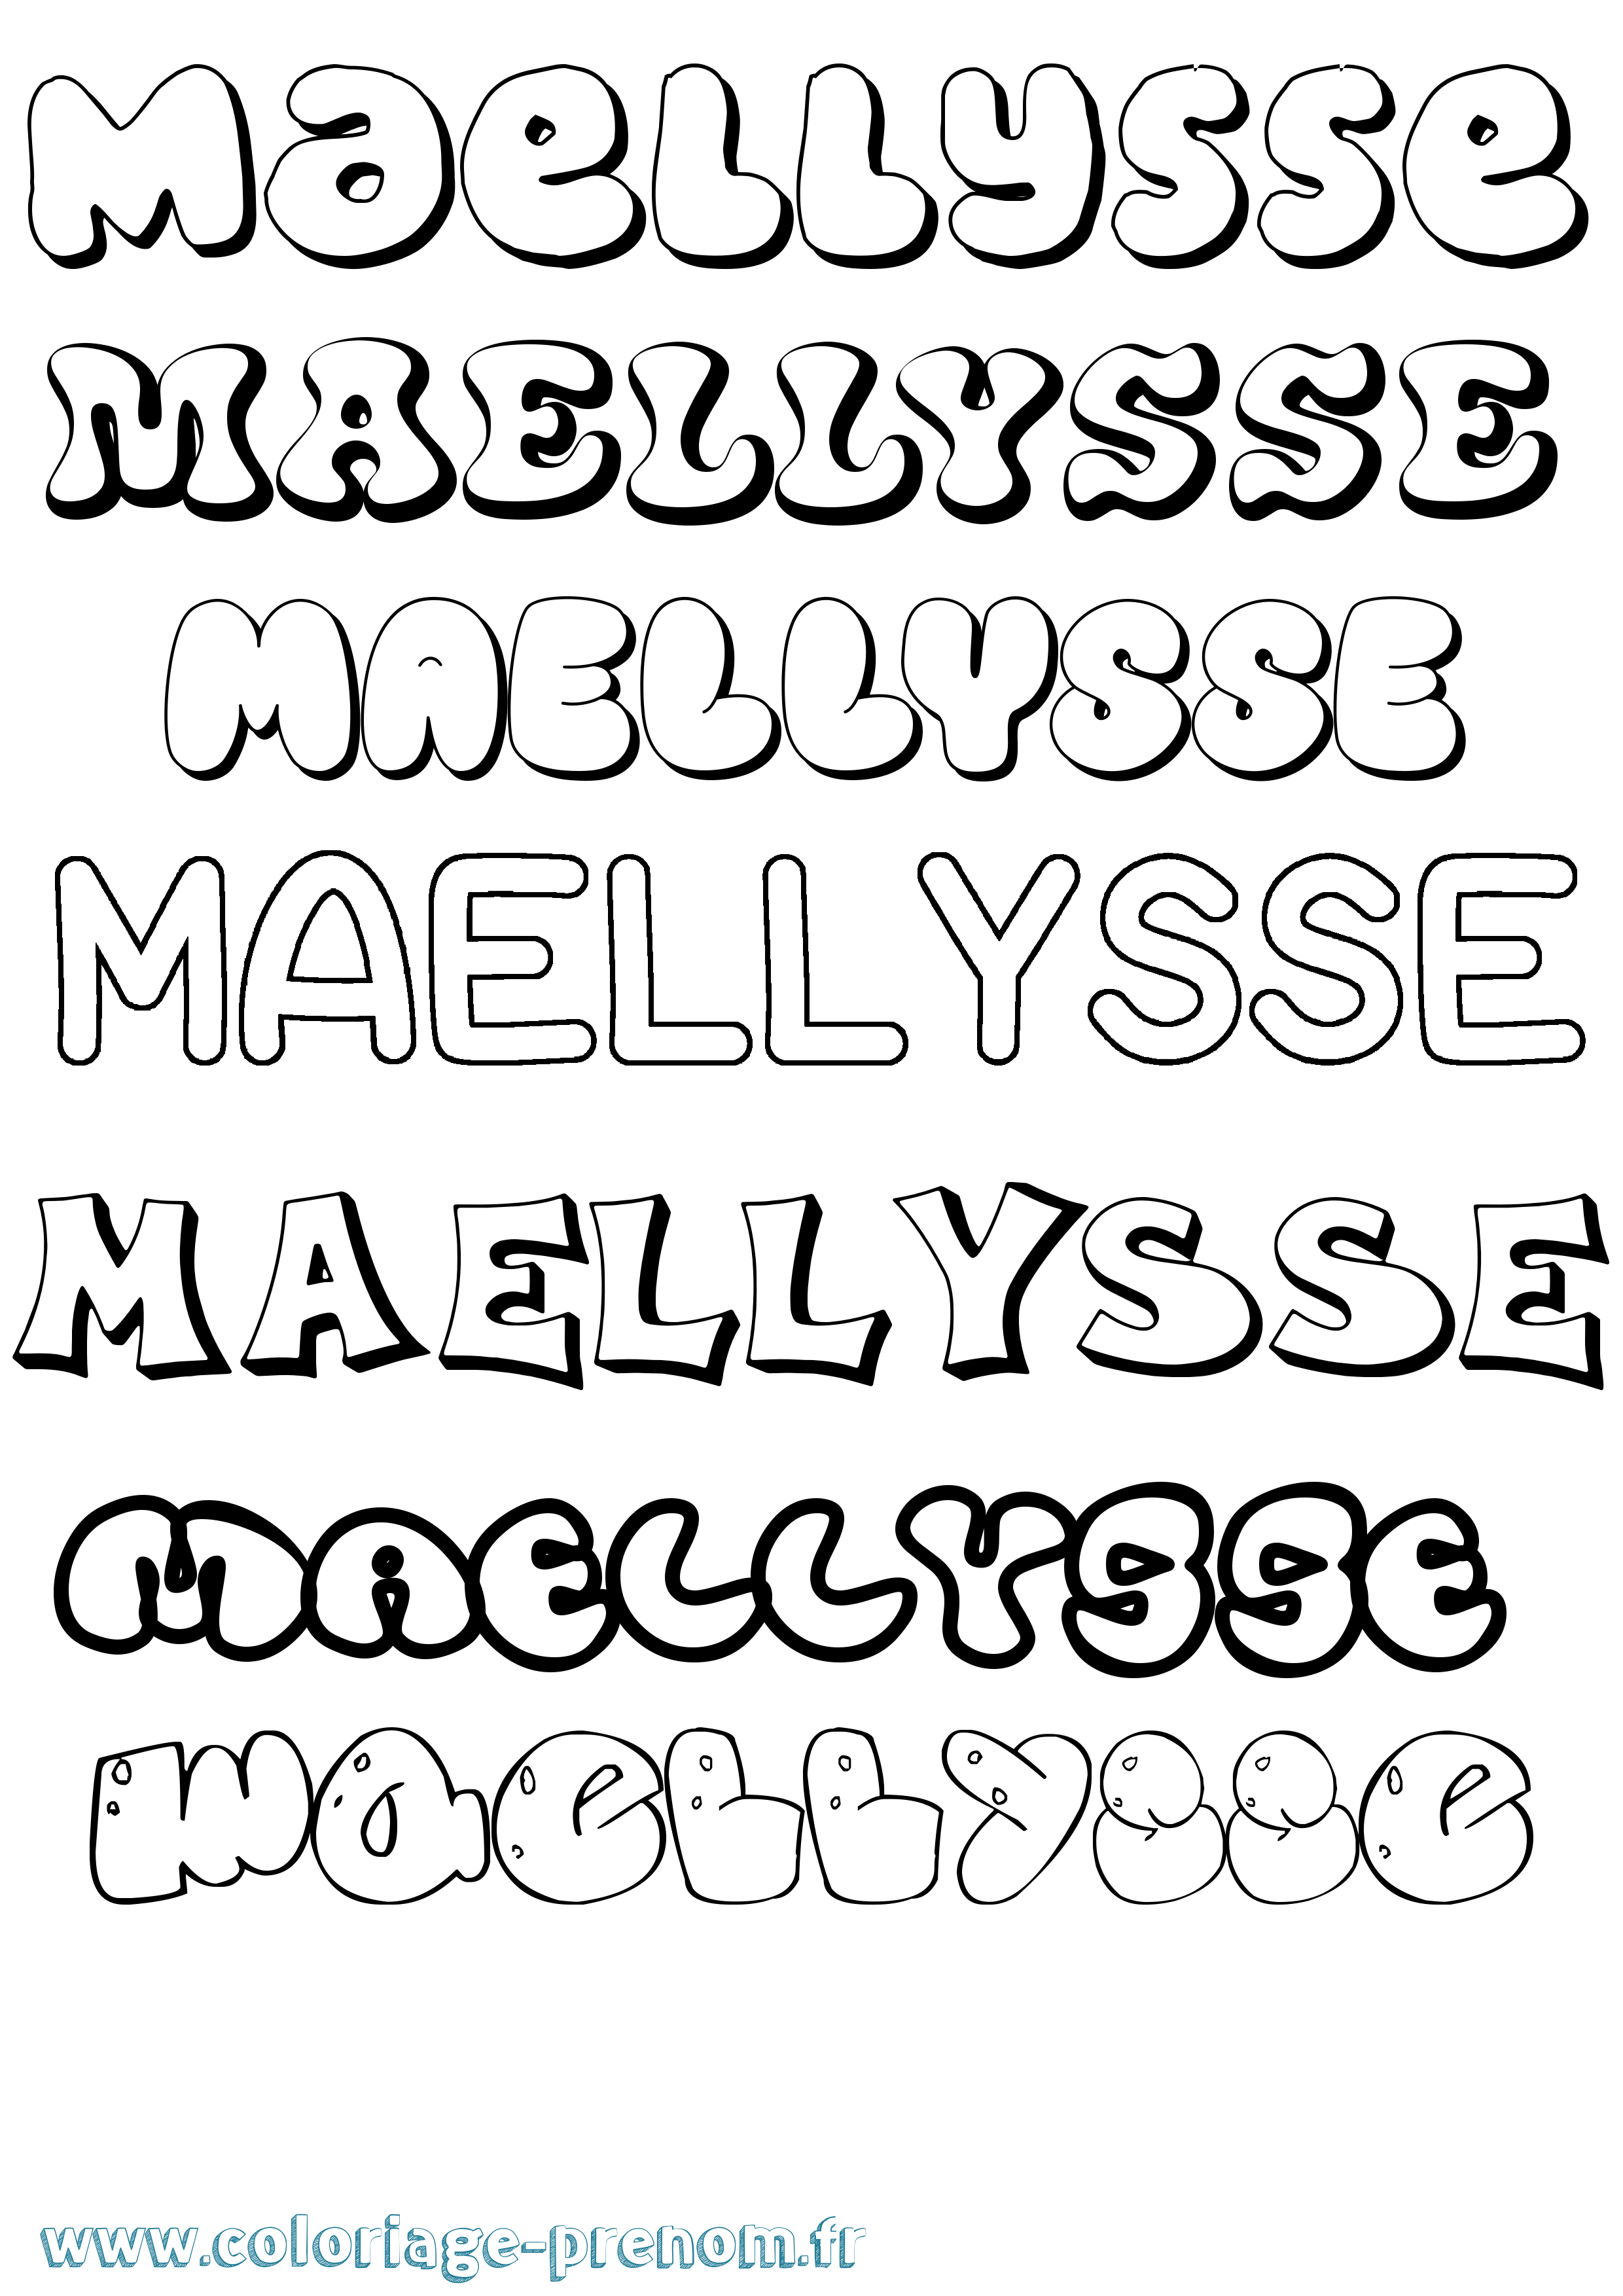 Coloriage prénom Maellysse Bubble